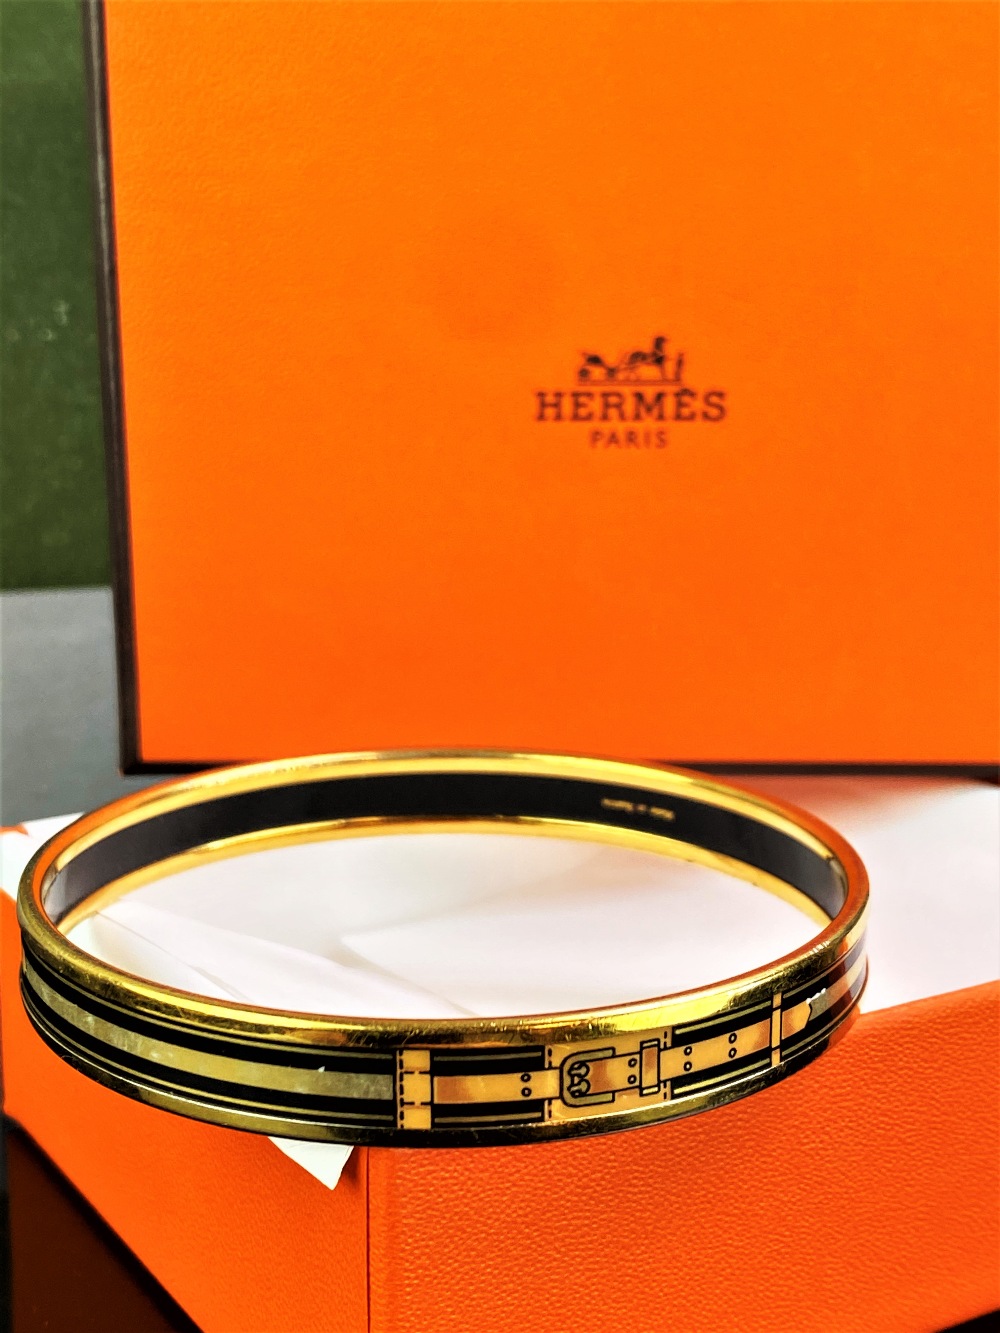 Hermes Gold Plated Grand Menege Belt Design Black/Tan Enamel Bangle - Image 4 of 4